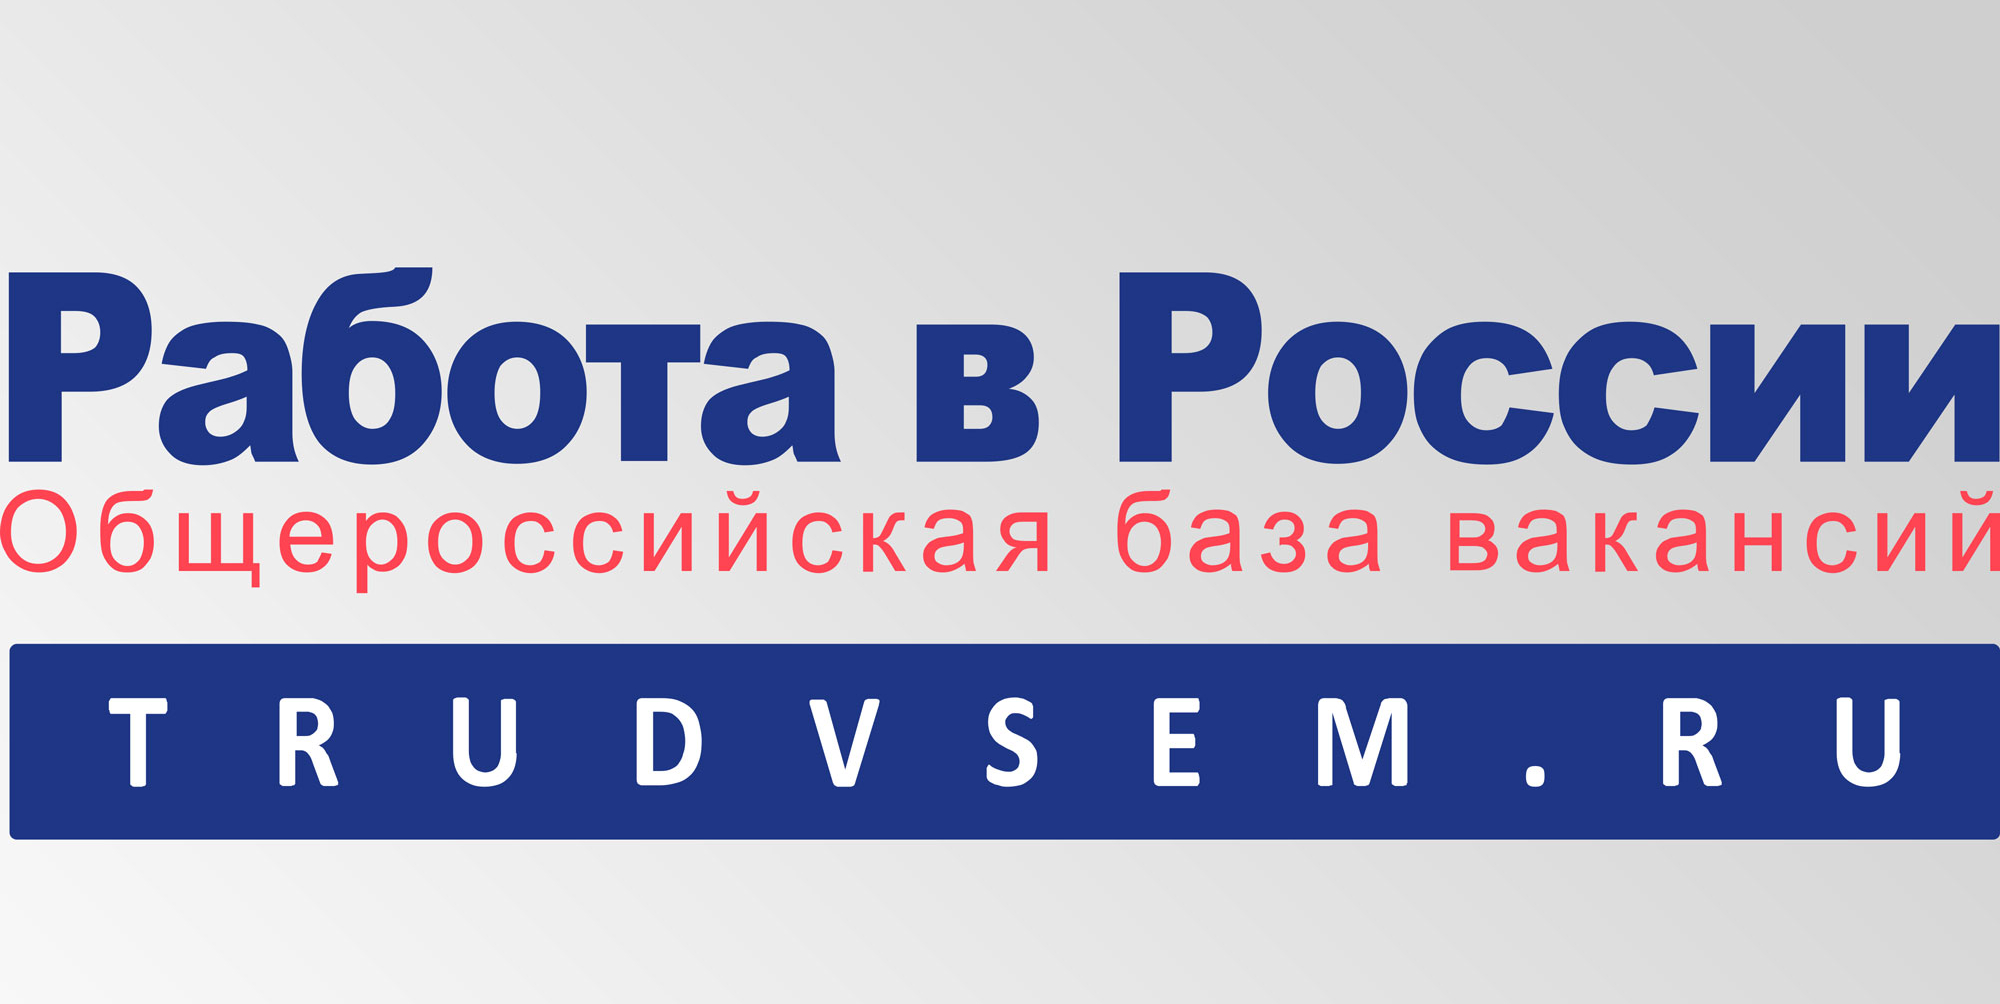 Инструкция по работе на портале РАБОТА В РОССИИ